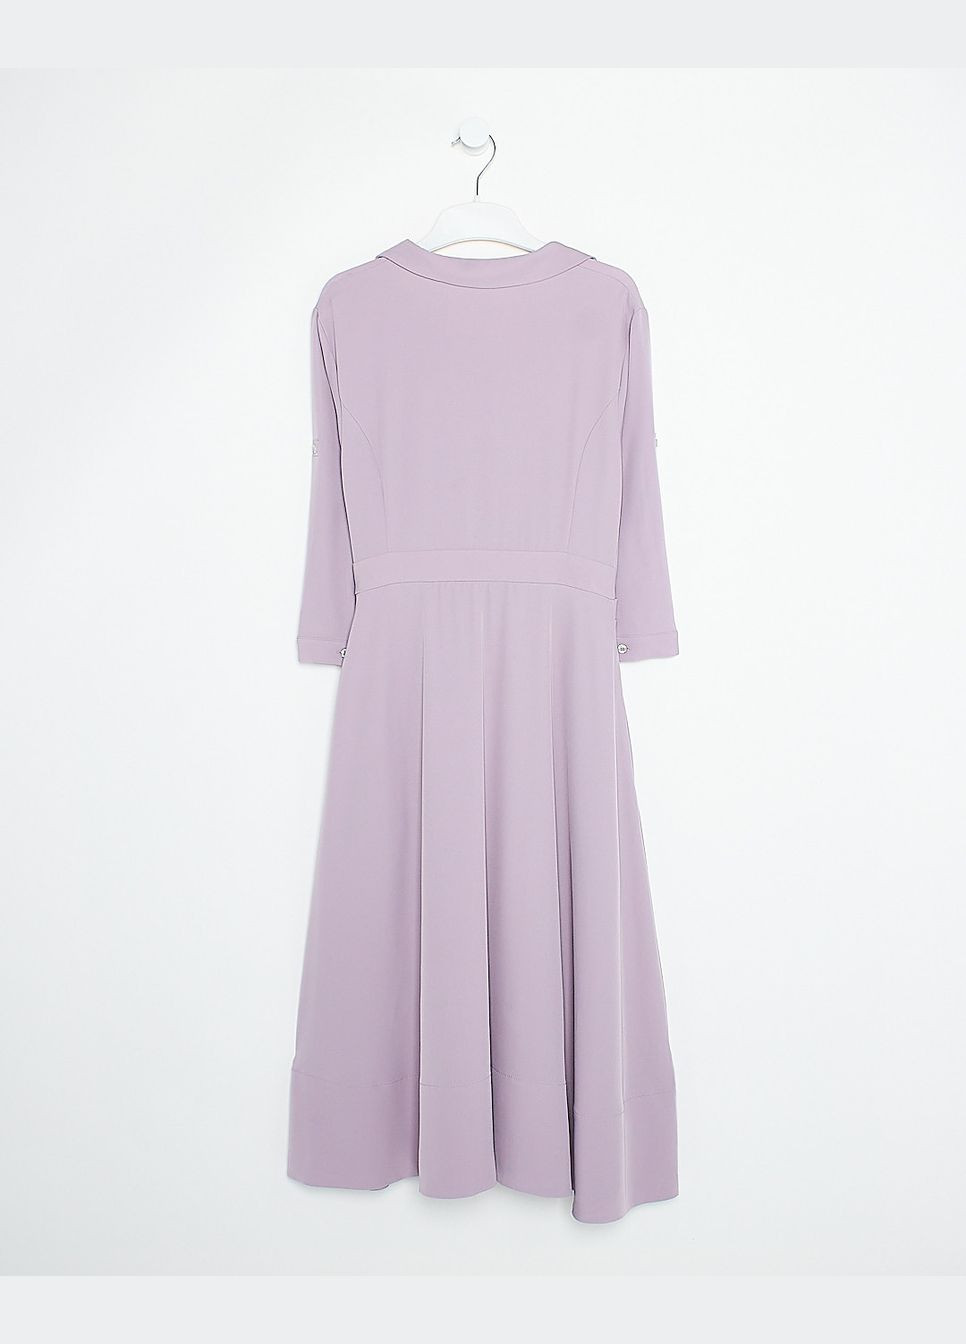 Светло-фиолетовое платье демисезон,бледно-фиолетовый, Vero Moda